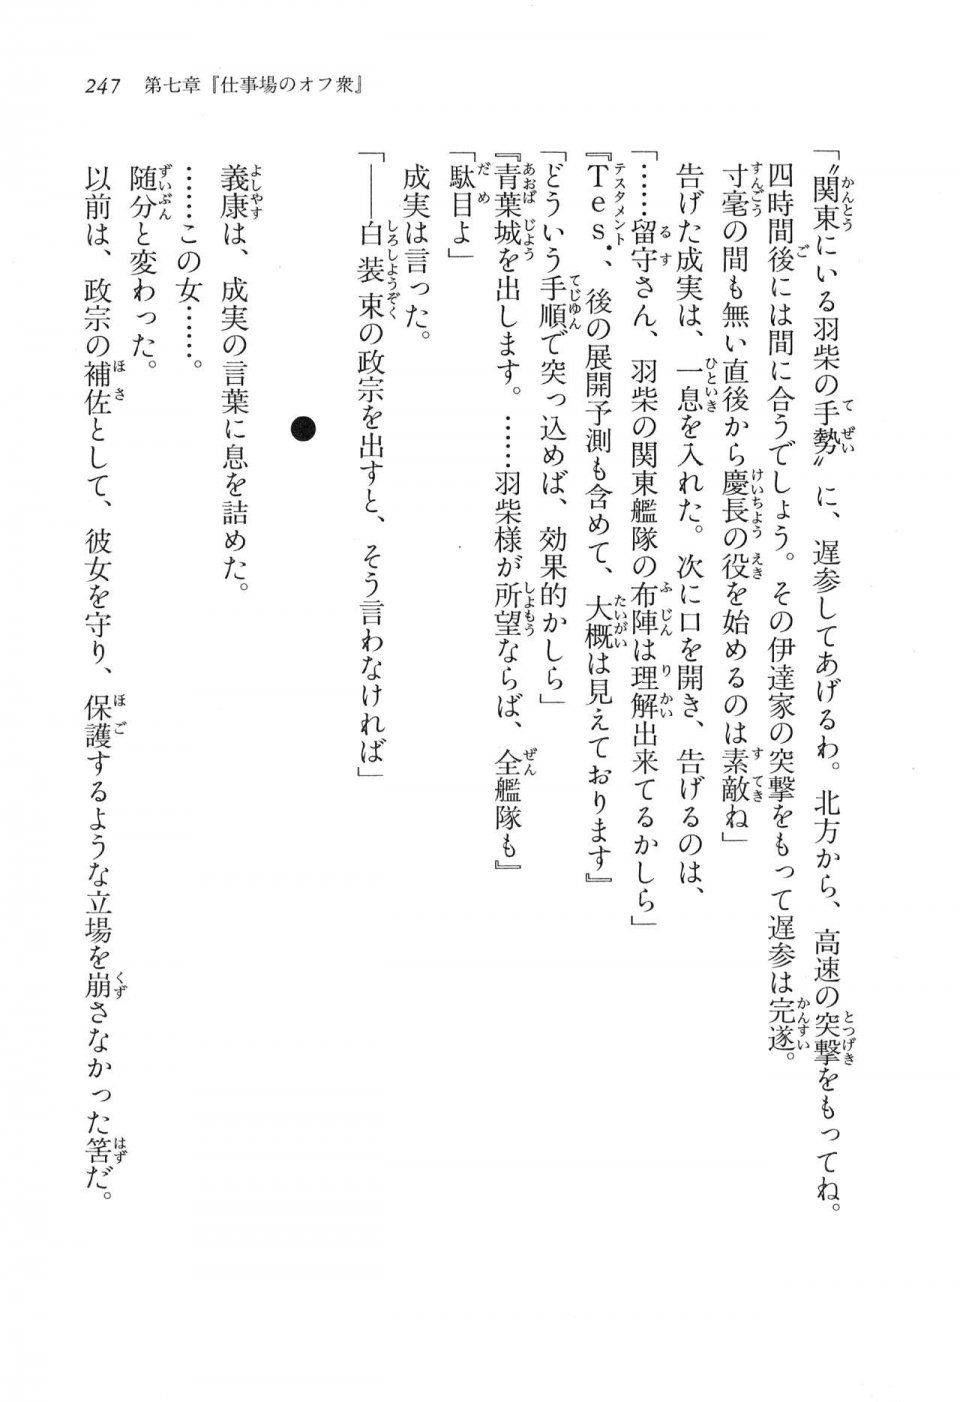 Kyoukai Senjou no Horizon LN Vol 16(7A) - Photo #247